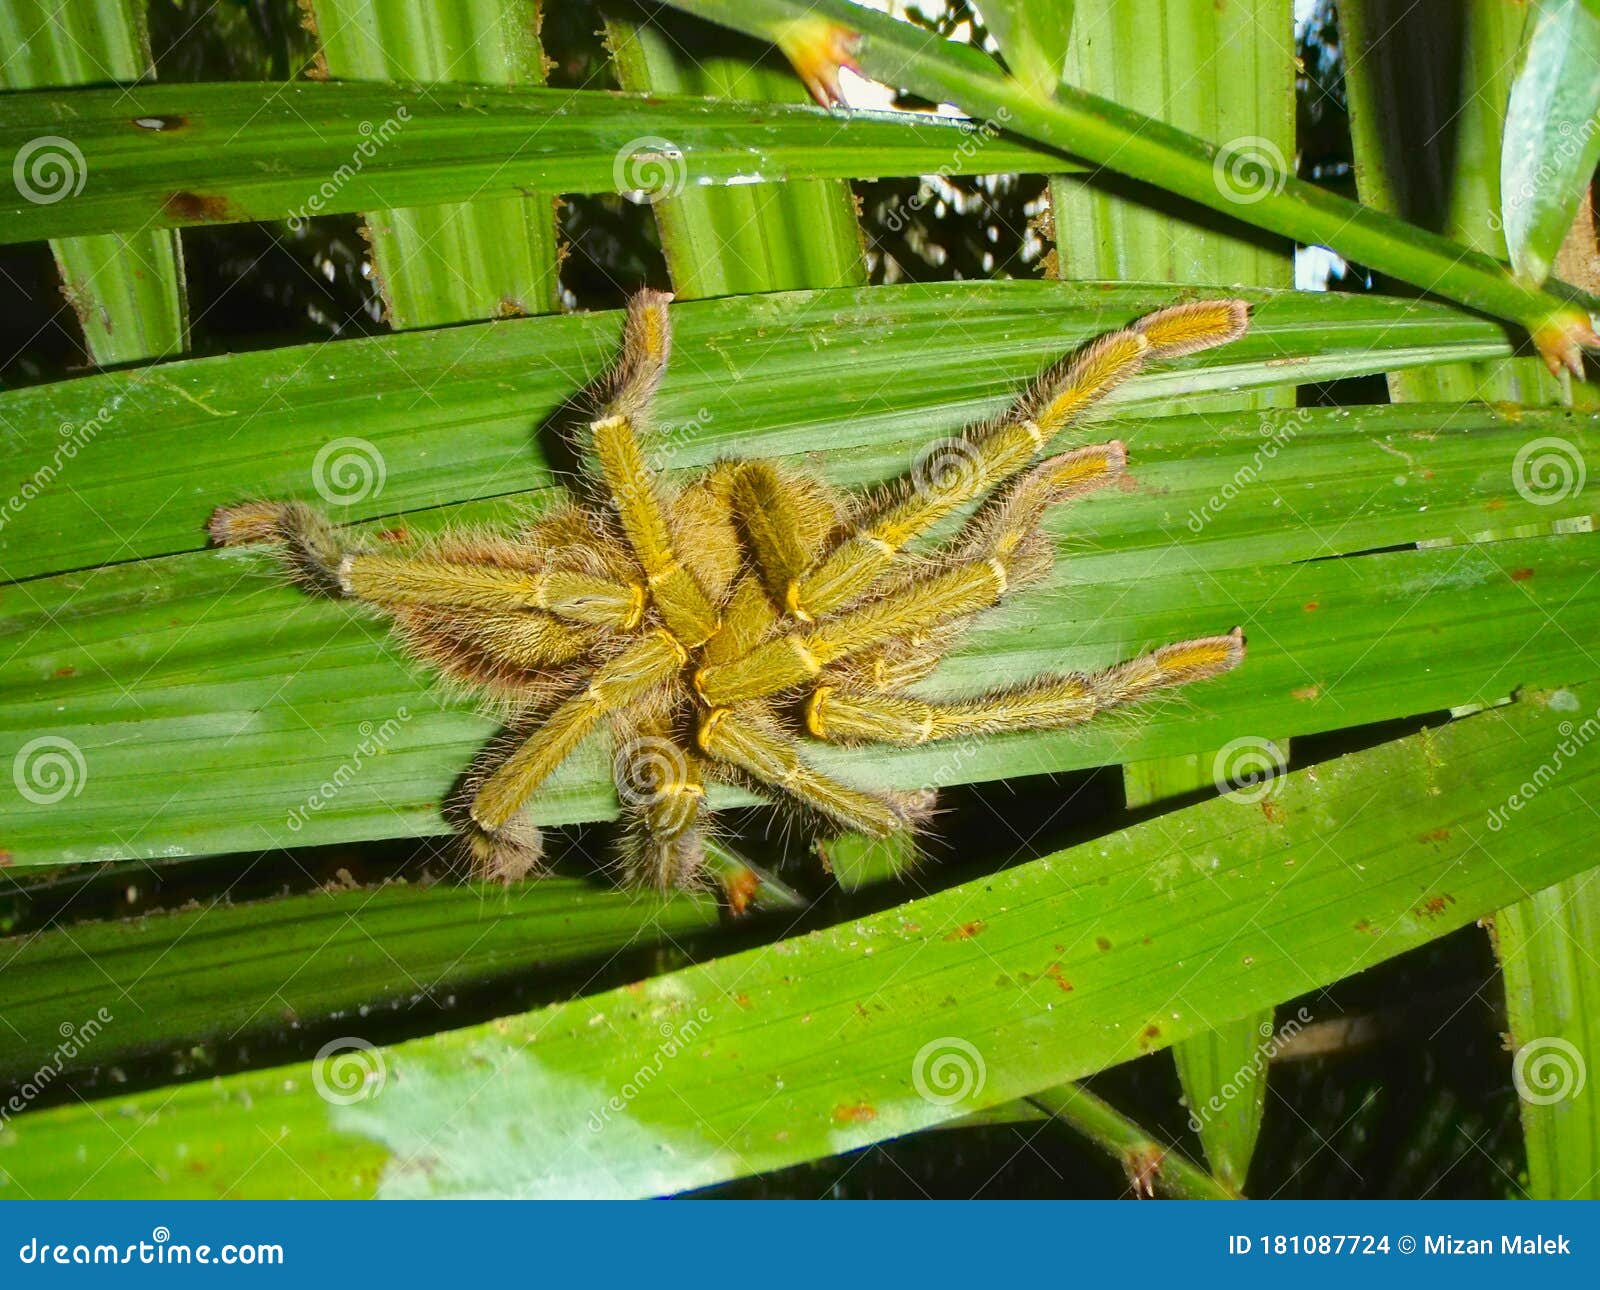 Malaysia tarantula Tarantula, Malaysia's